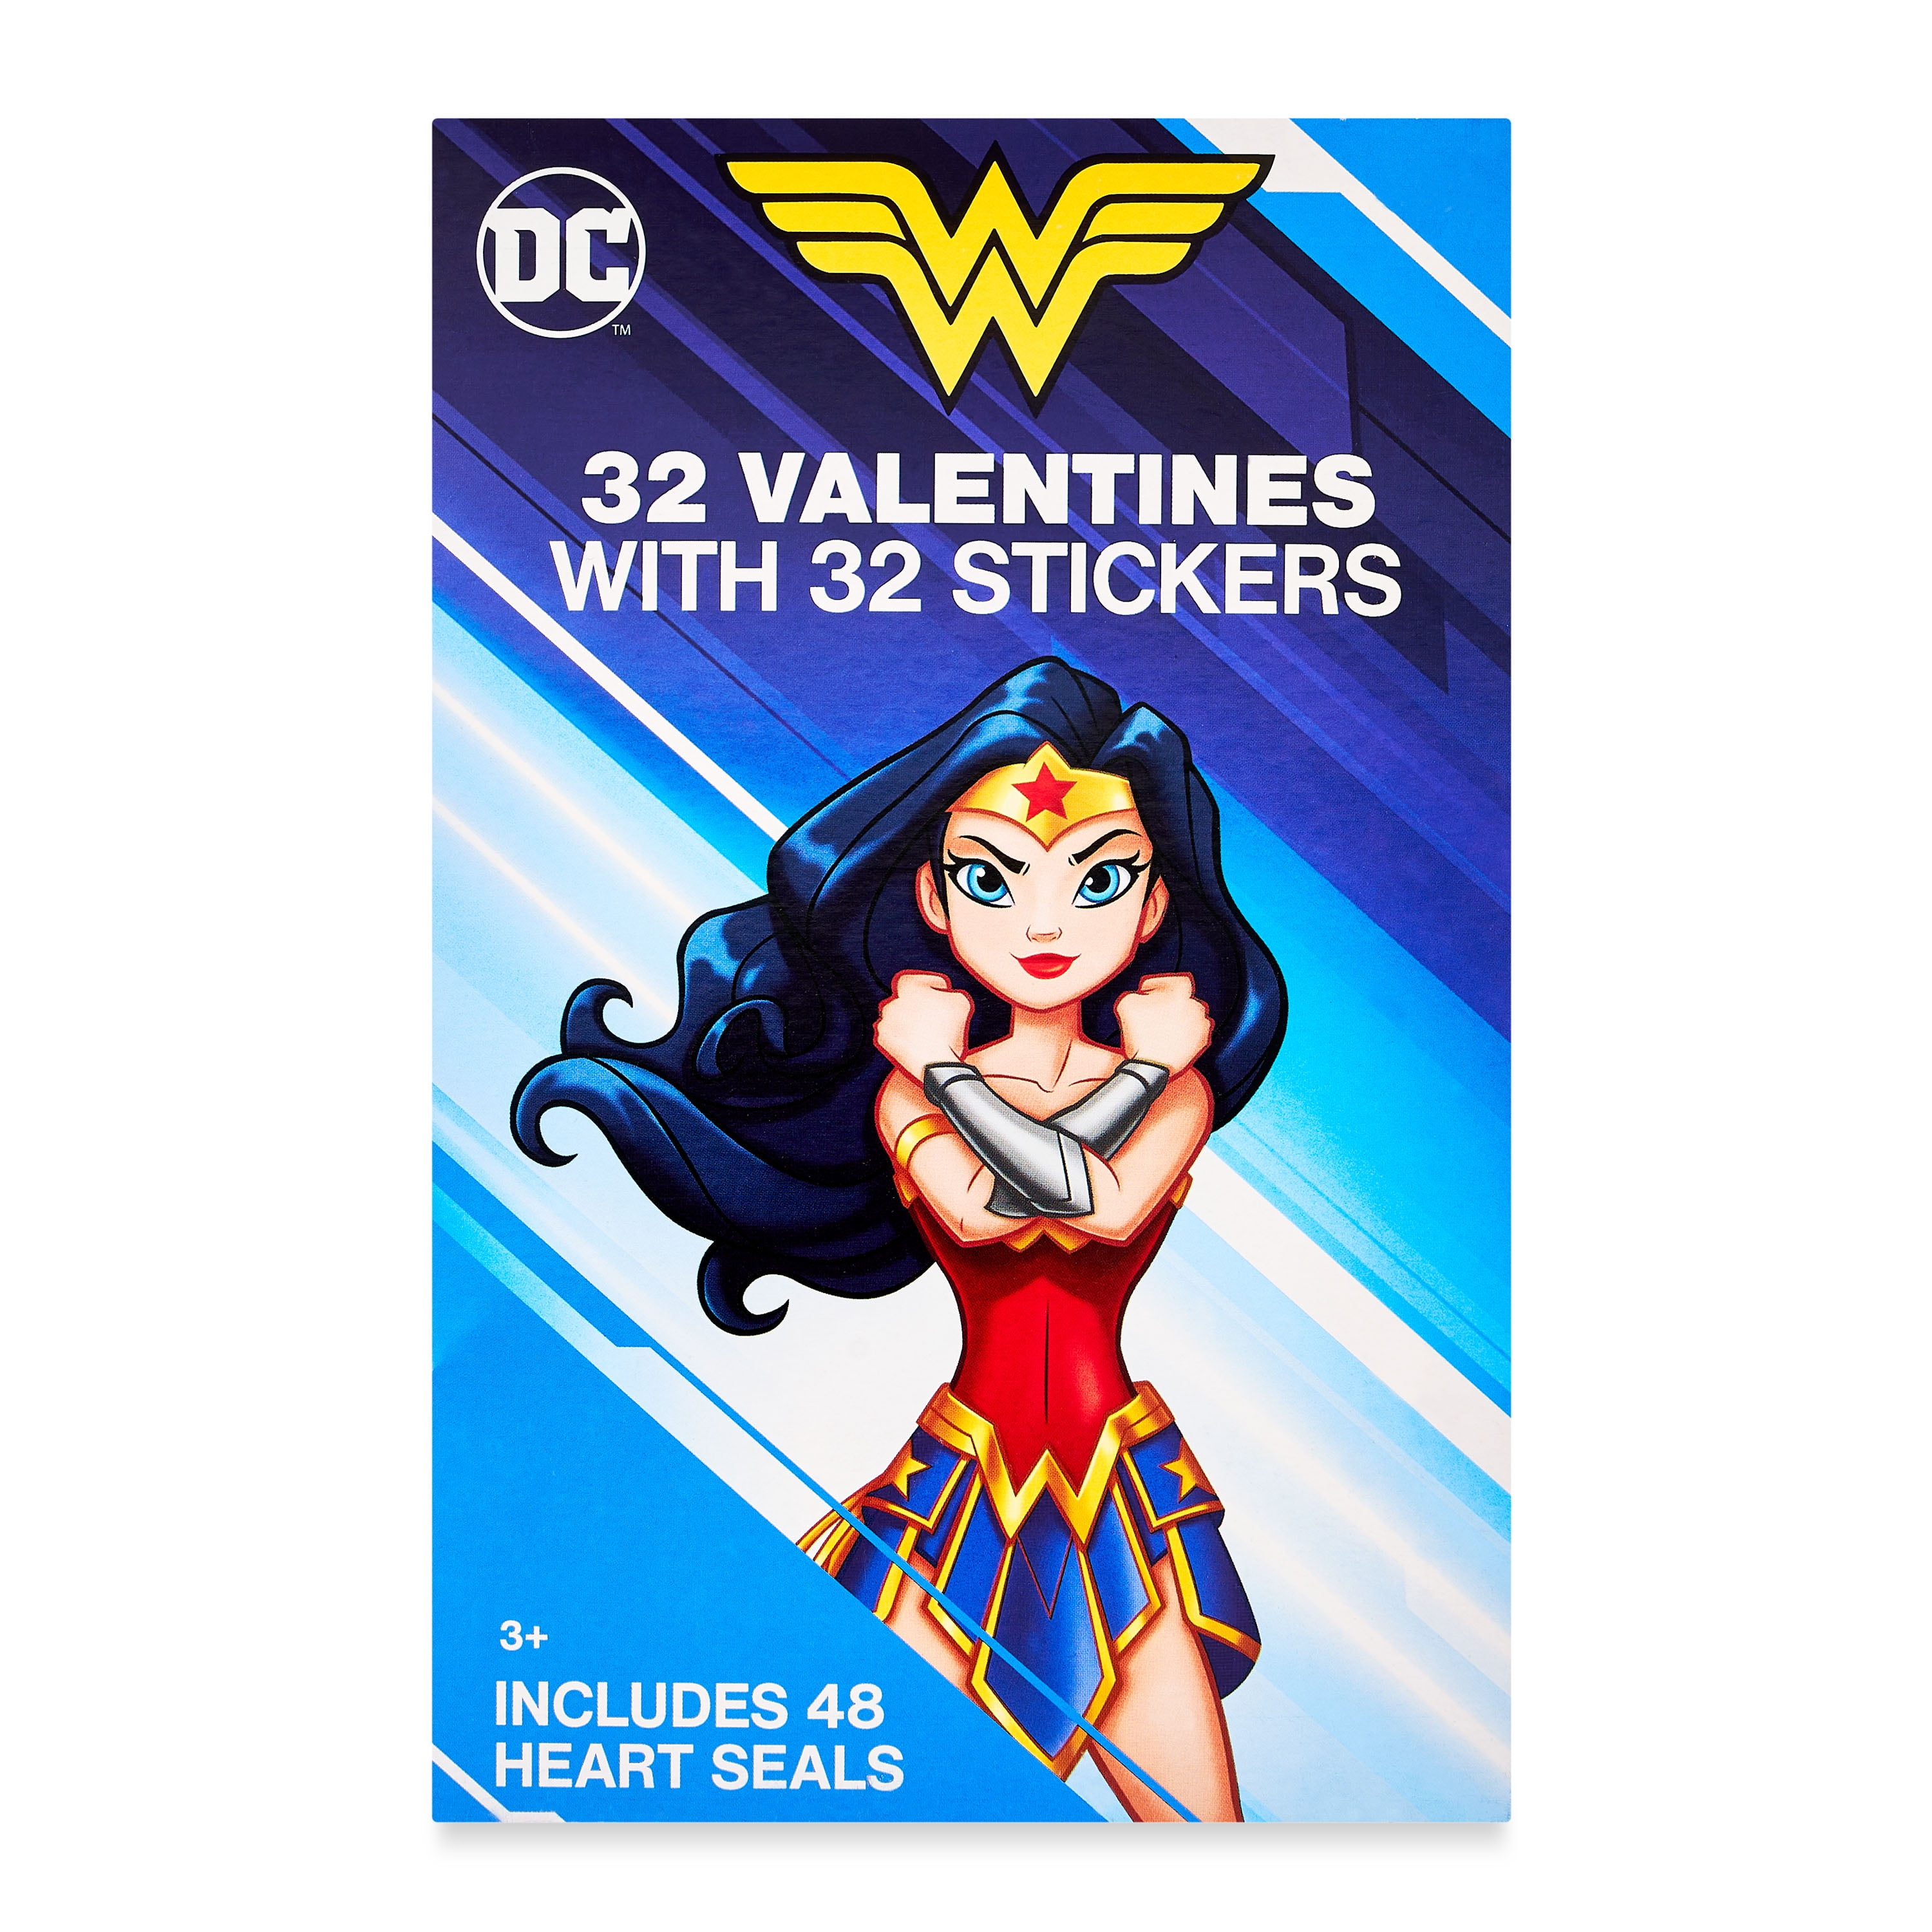 Girl Power Super Woman Women Power Sticker